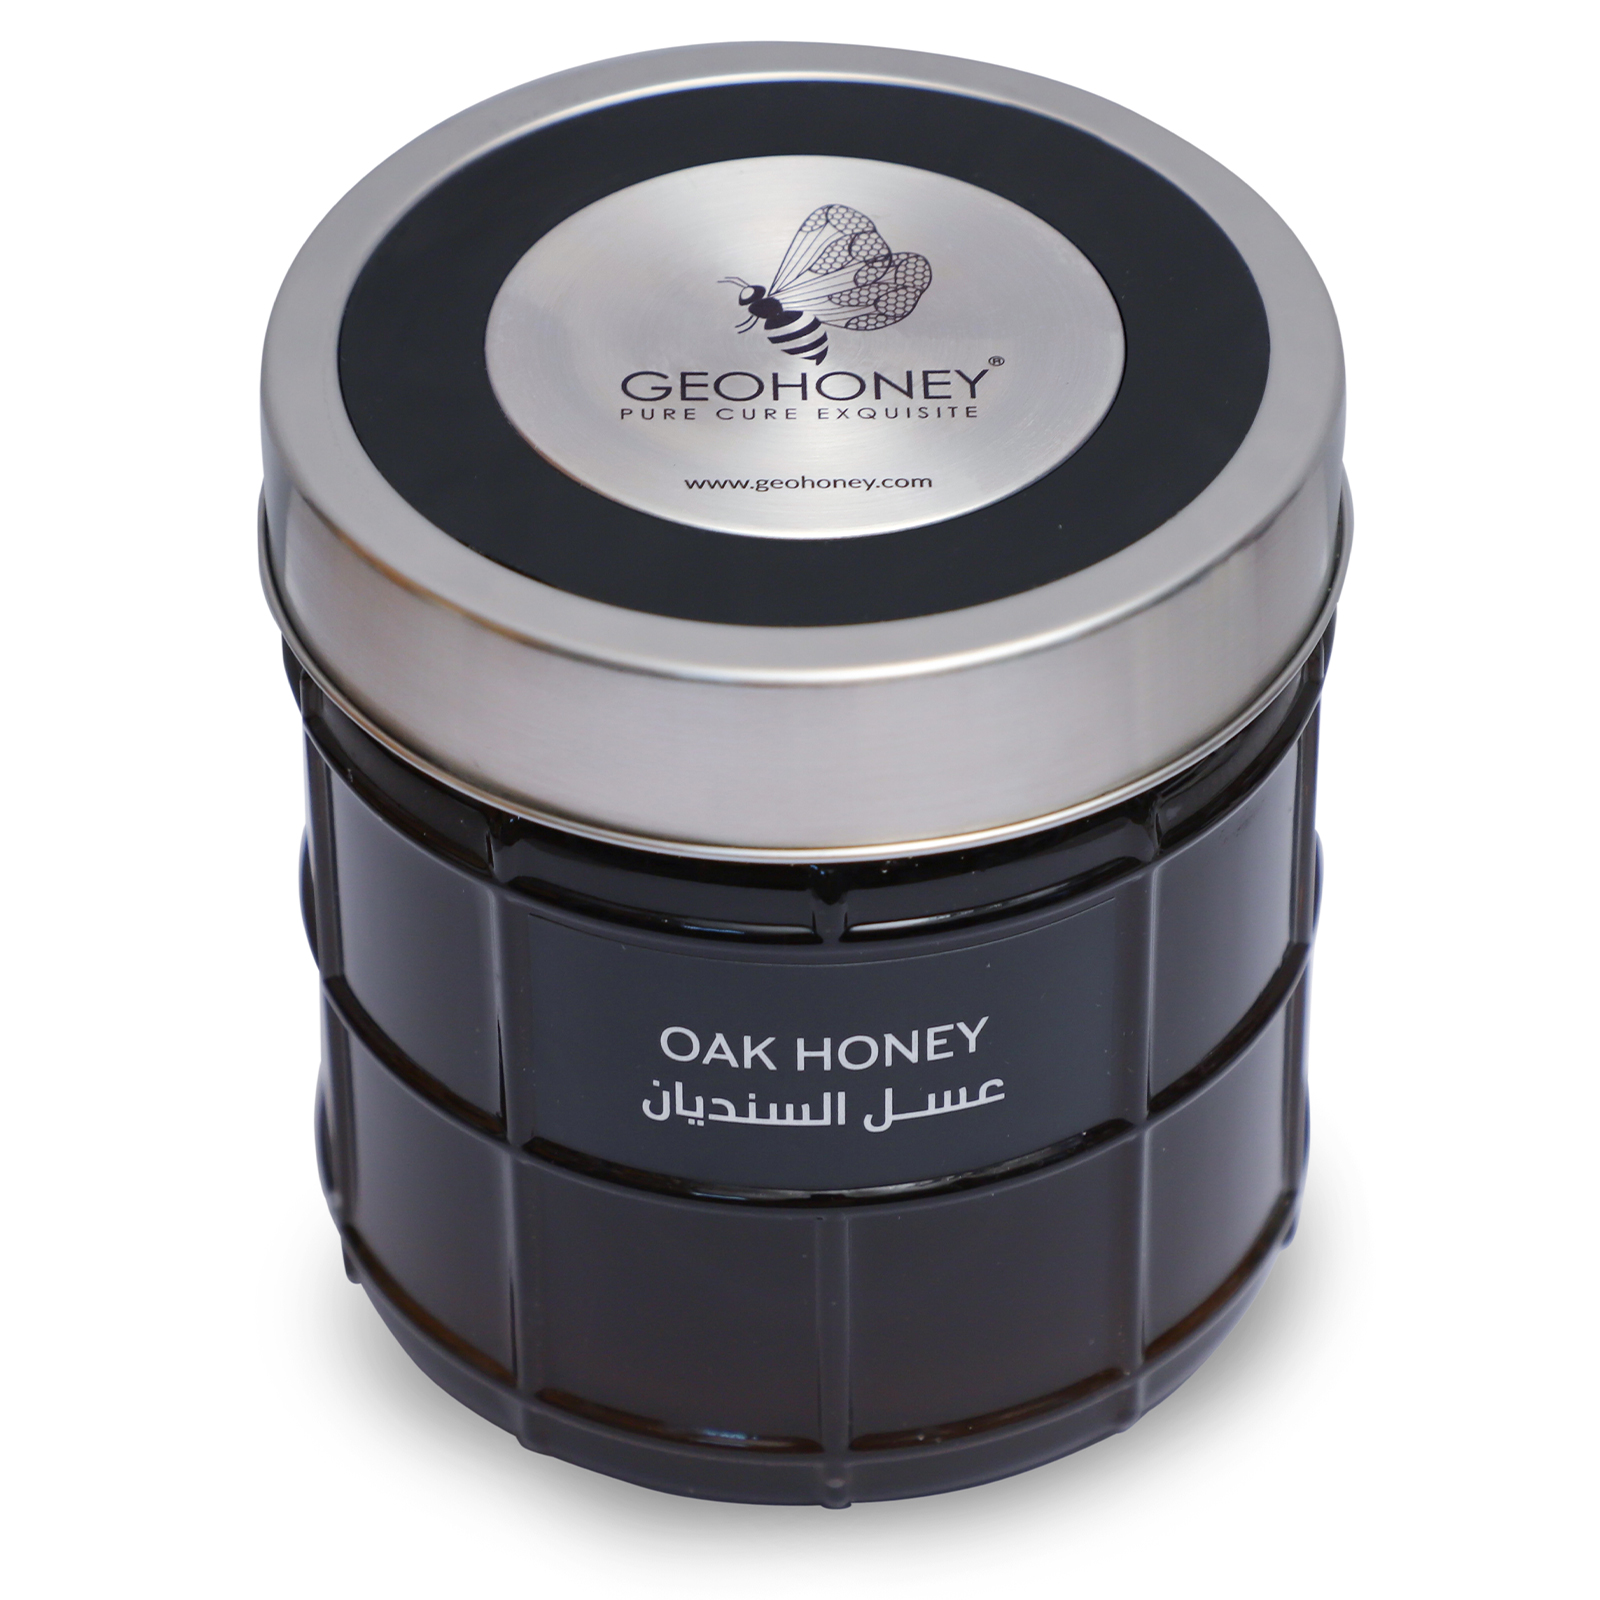 oak honey.JPG  by geohoney